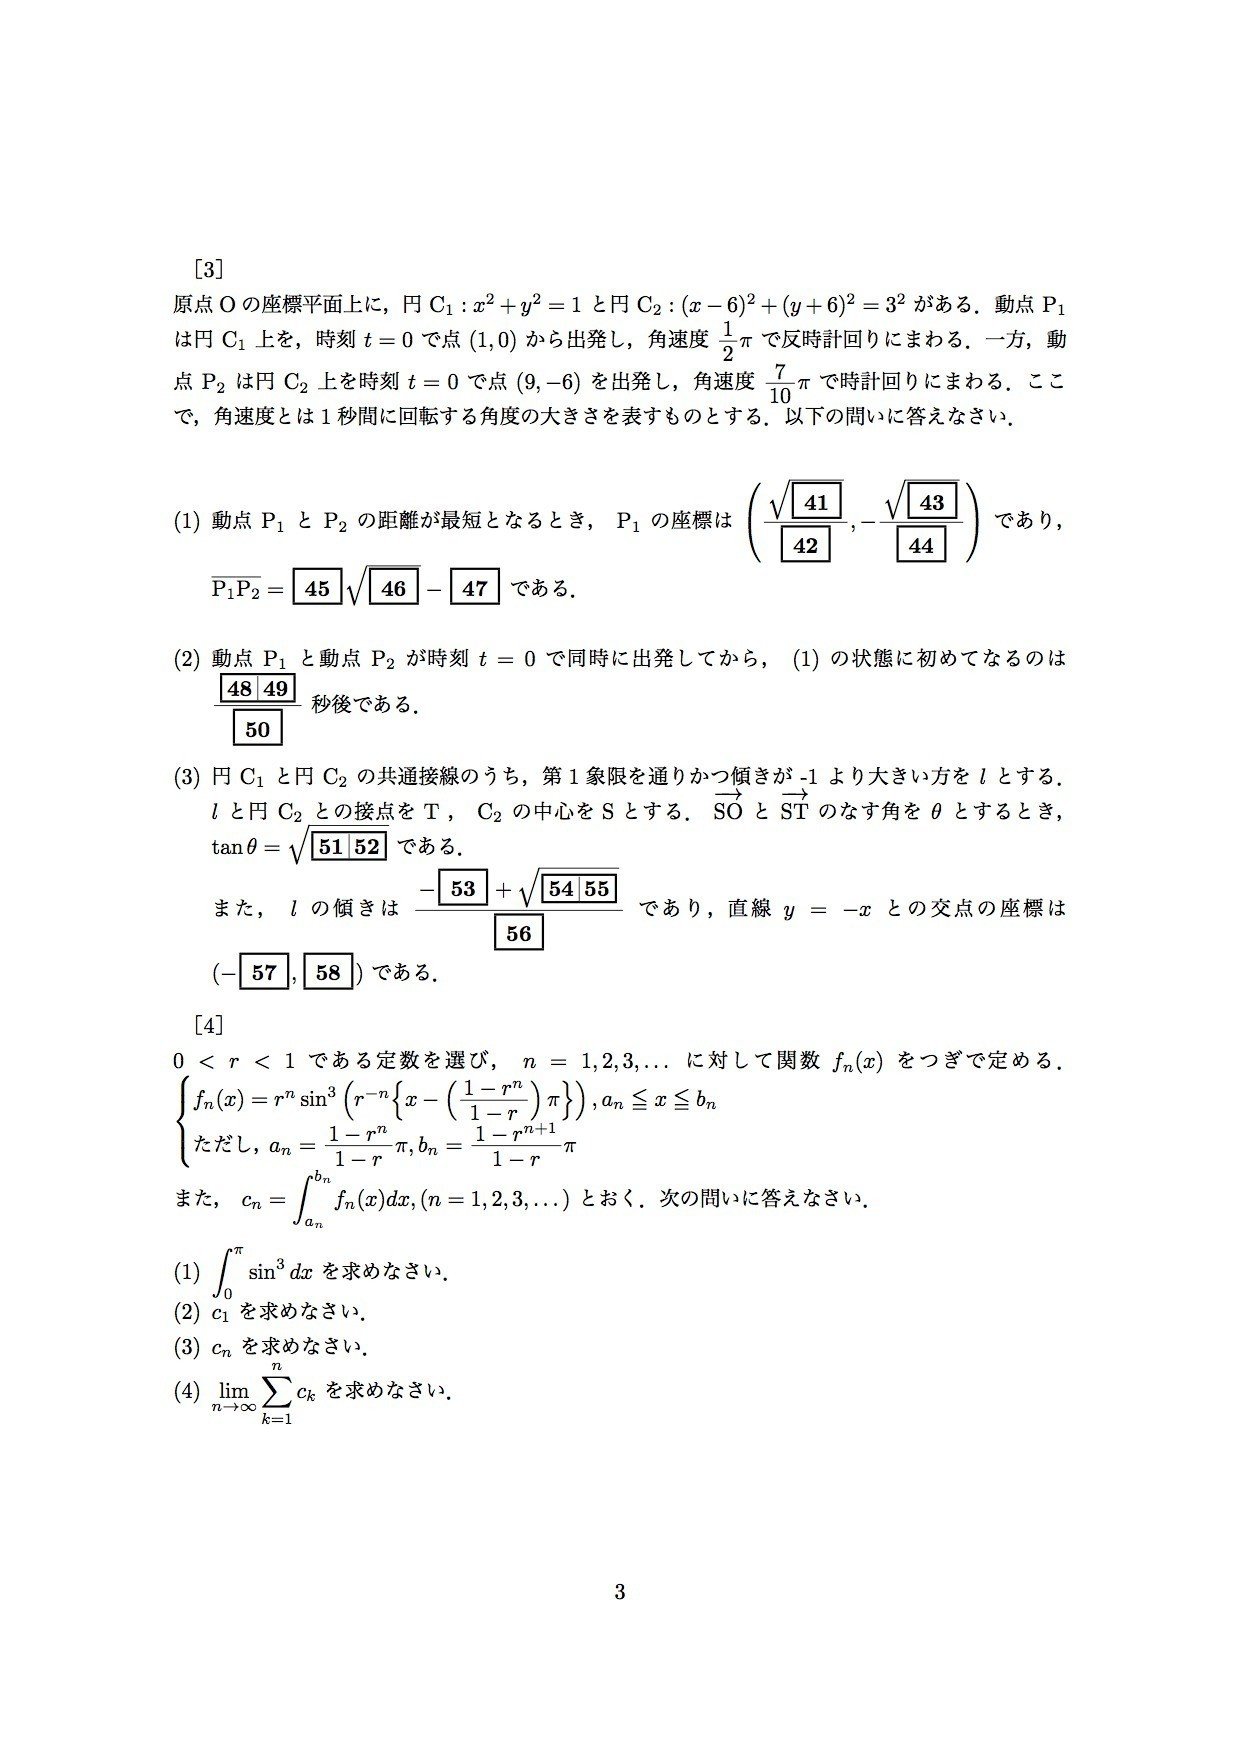 2017年 日本大学 医学部 数学の問題と解答を作ってみました